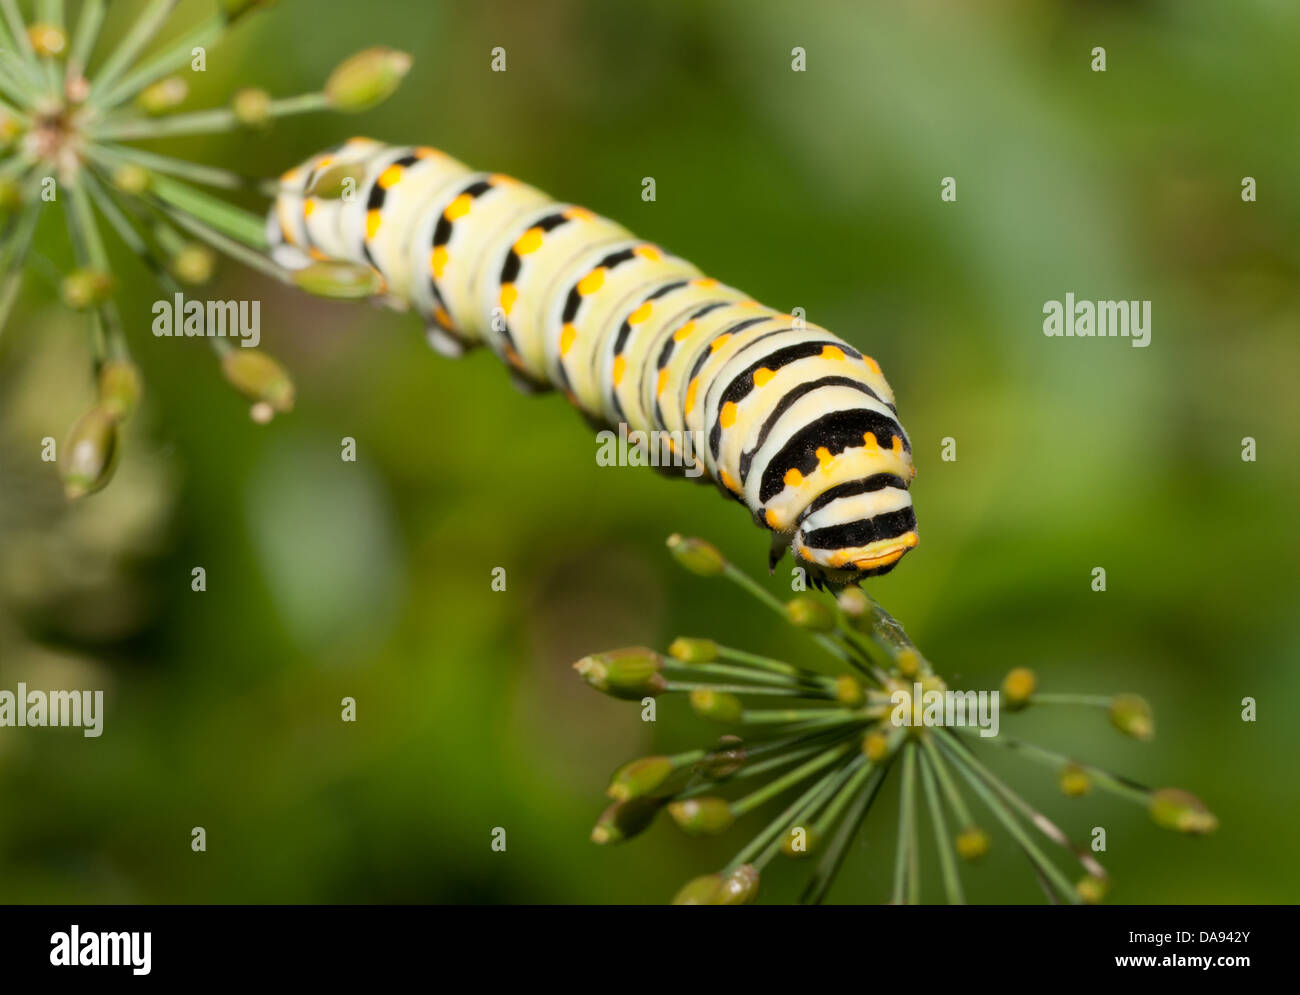 Caterpillar de una especie de mariposa Oriental comiendo un tallo eneldo Foto de stock